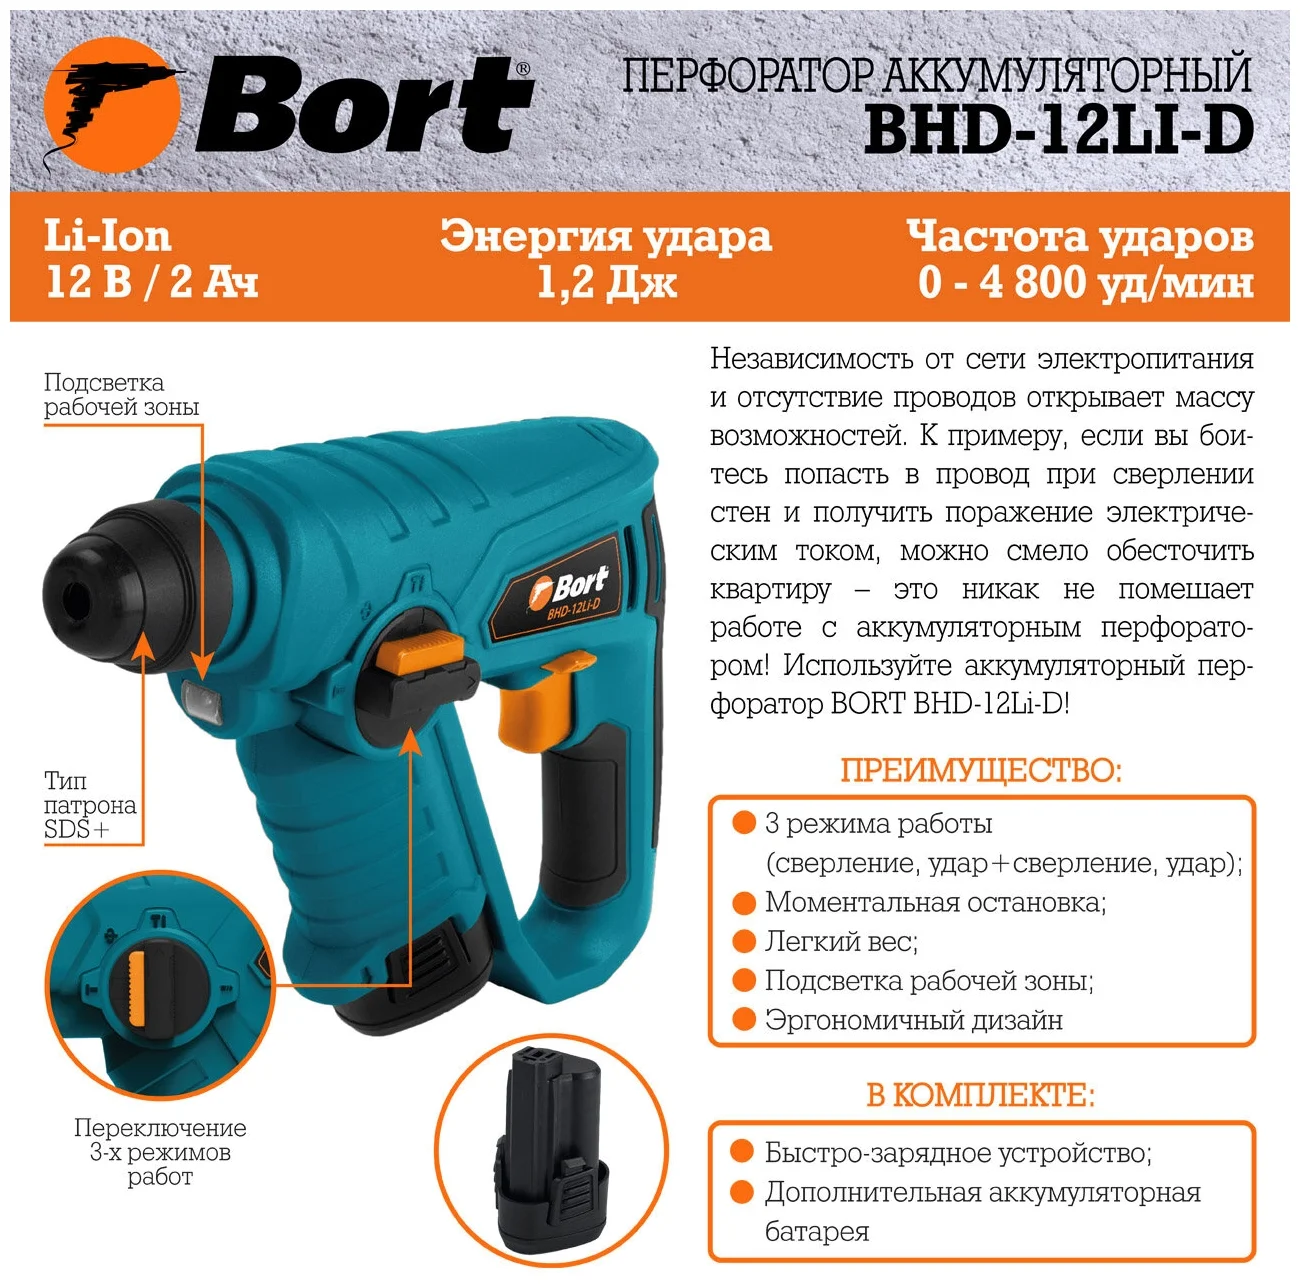 Bort BHD-12Li- D - вес: 2.4 кг